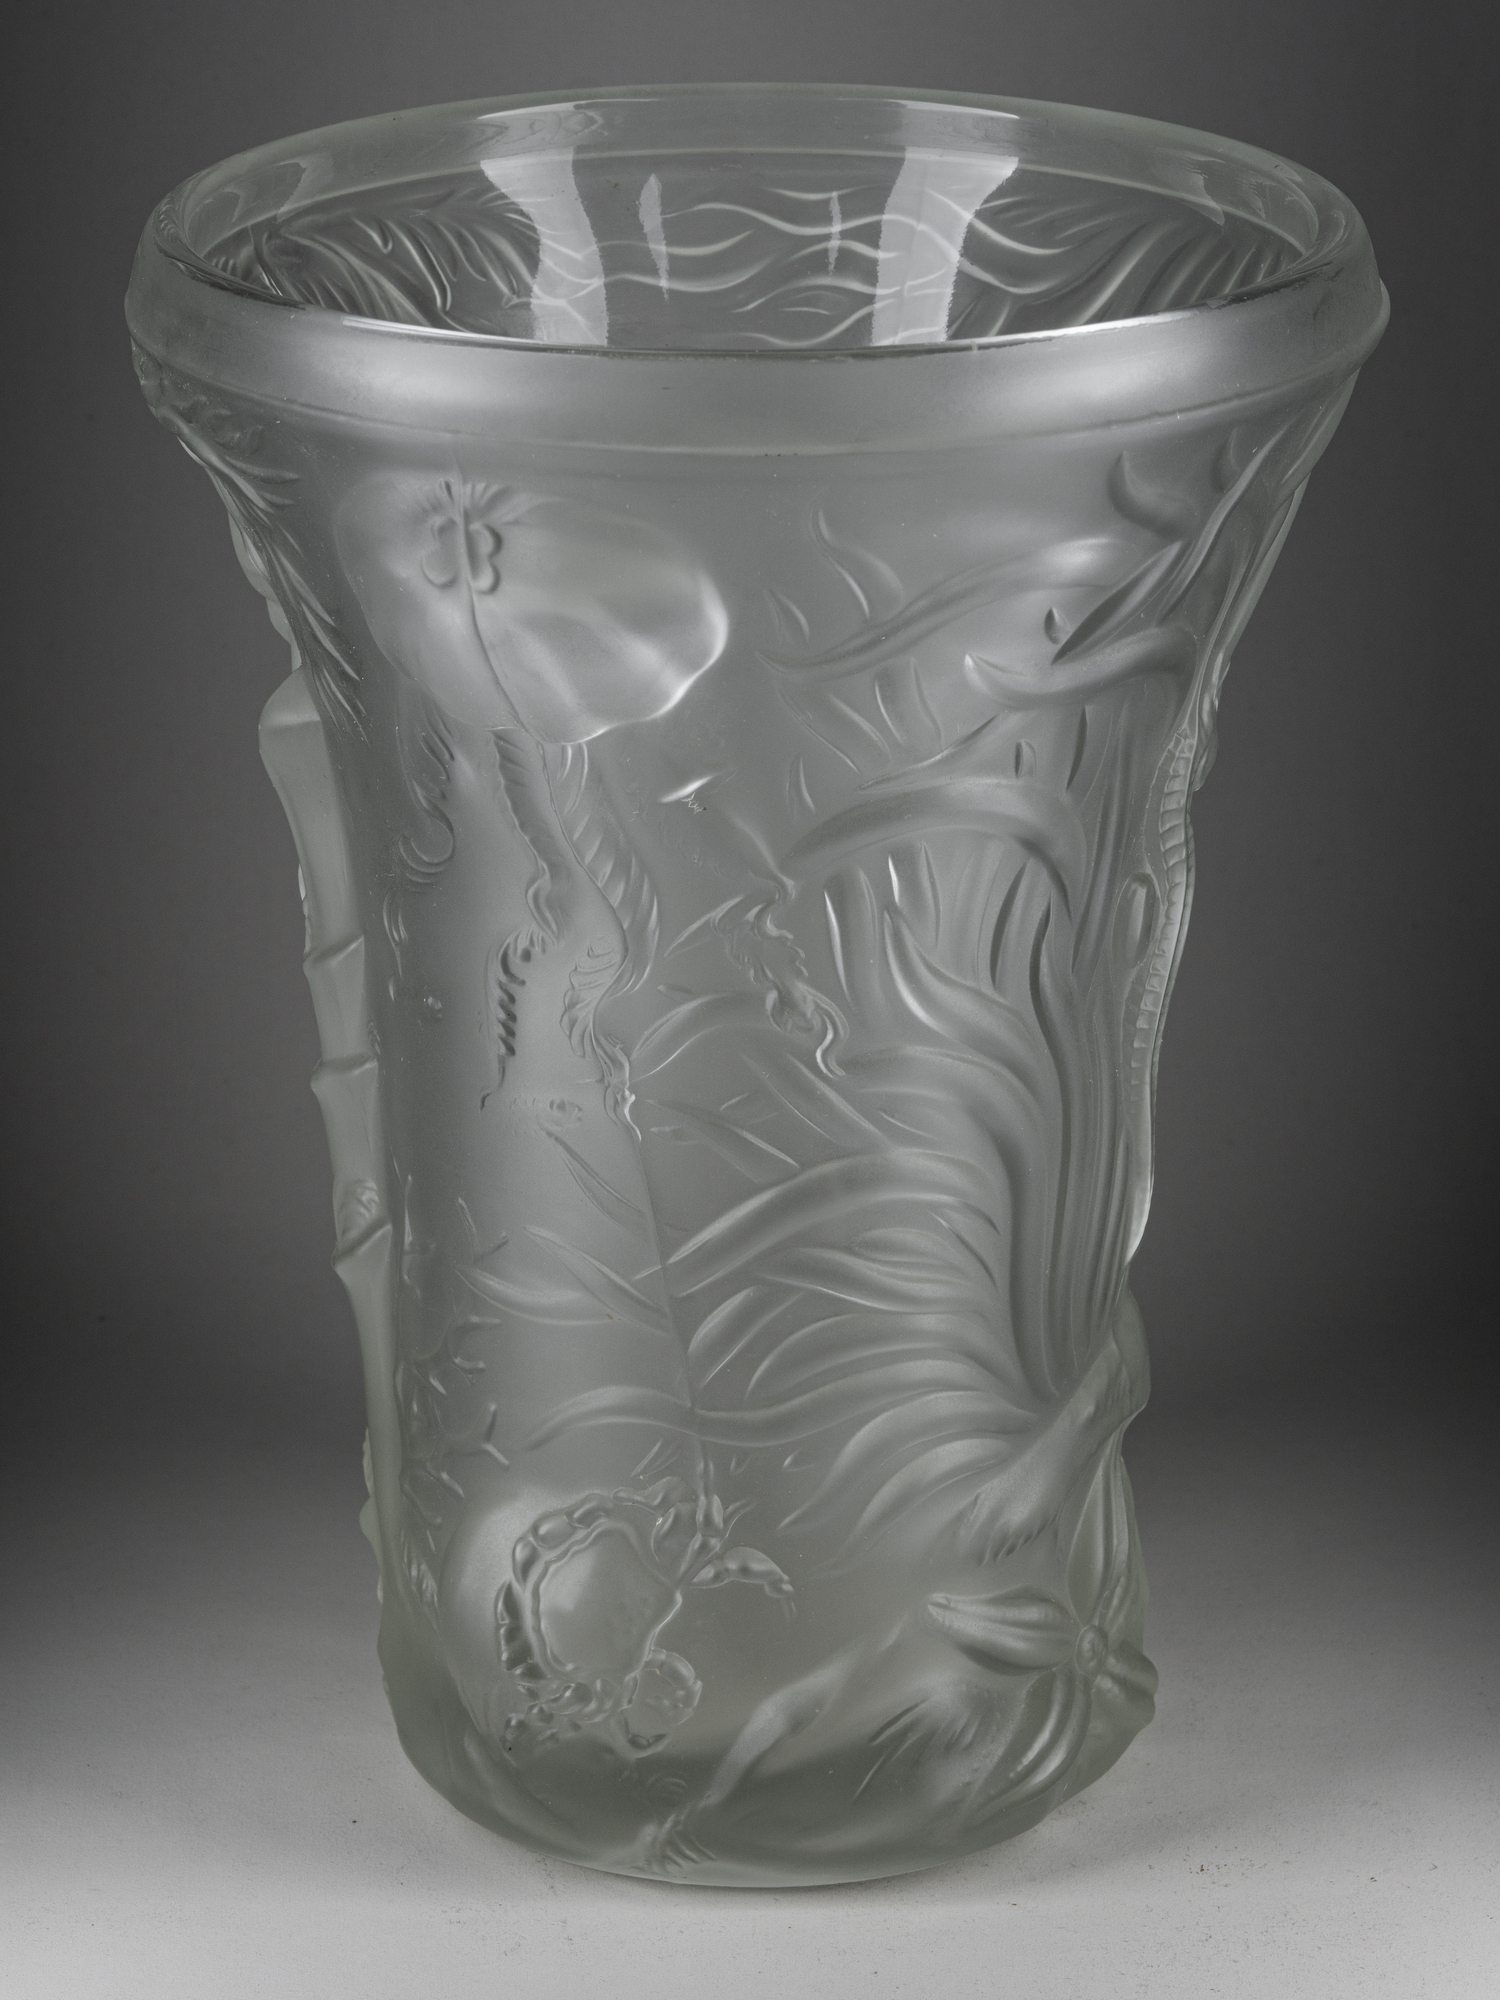 Большая ваза «Морская жизнь». <br>Франция, фирма Lalique, дизайн Йозефа Инвальда (?), конец 1920-начало 1930-х годов.